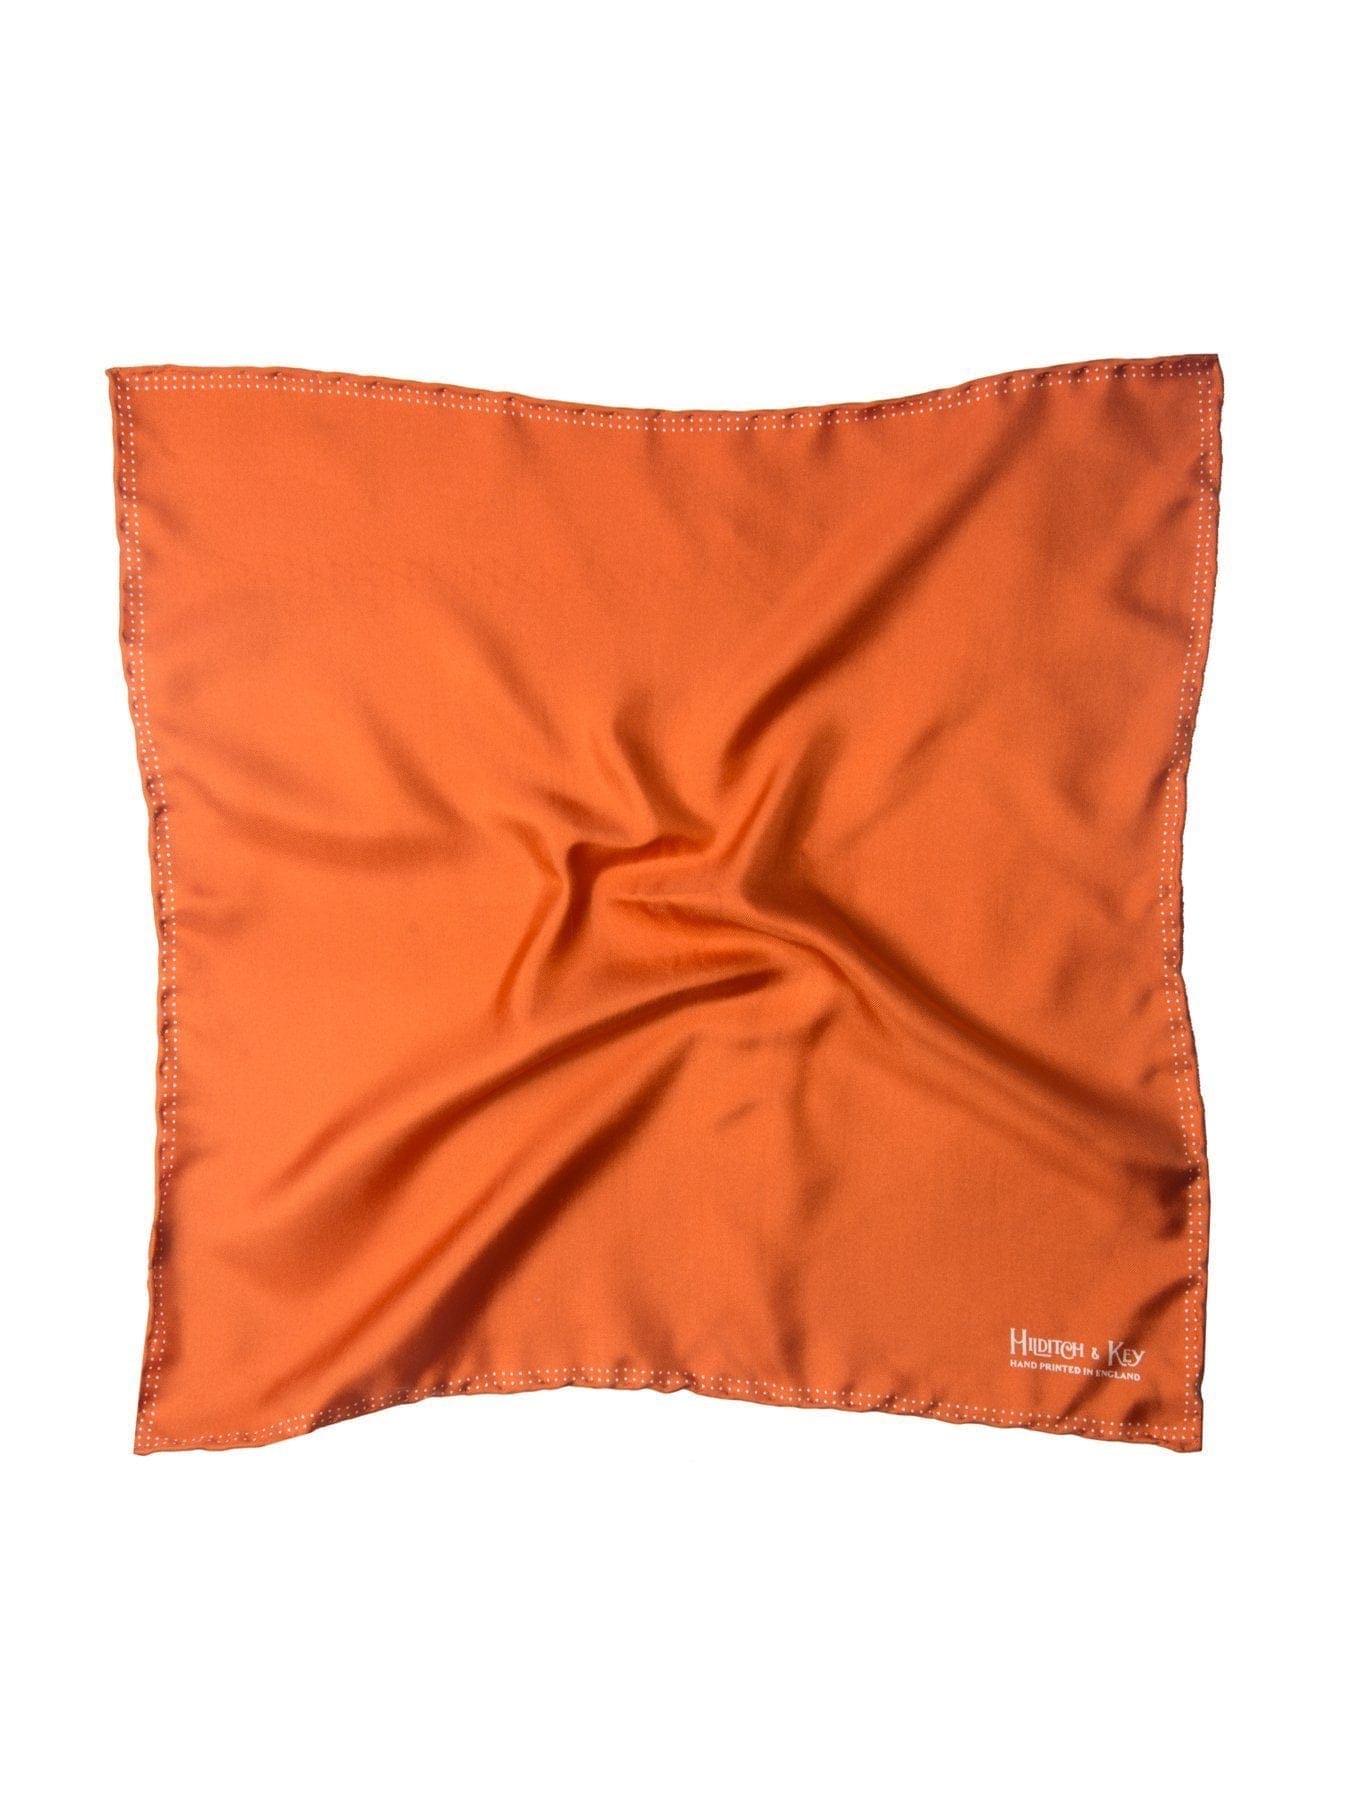 Orange Silk Handkerchief with White Spots